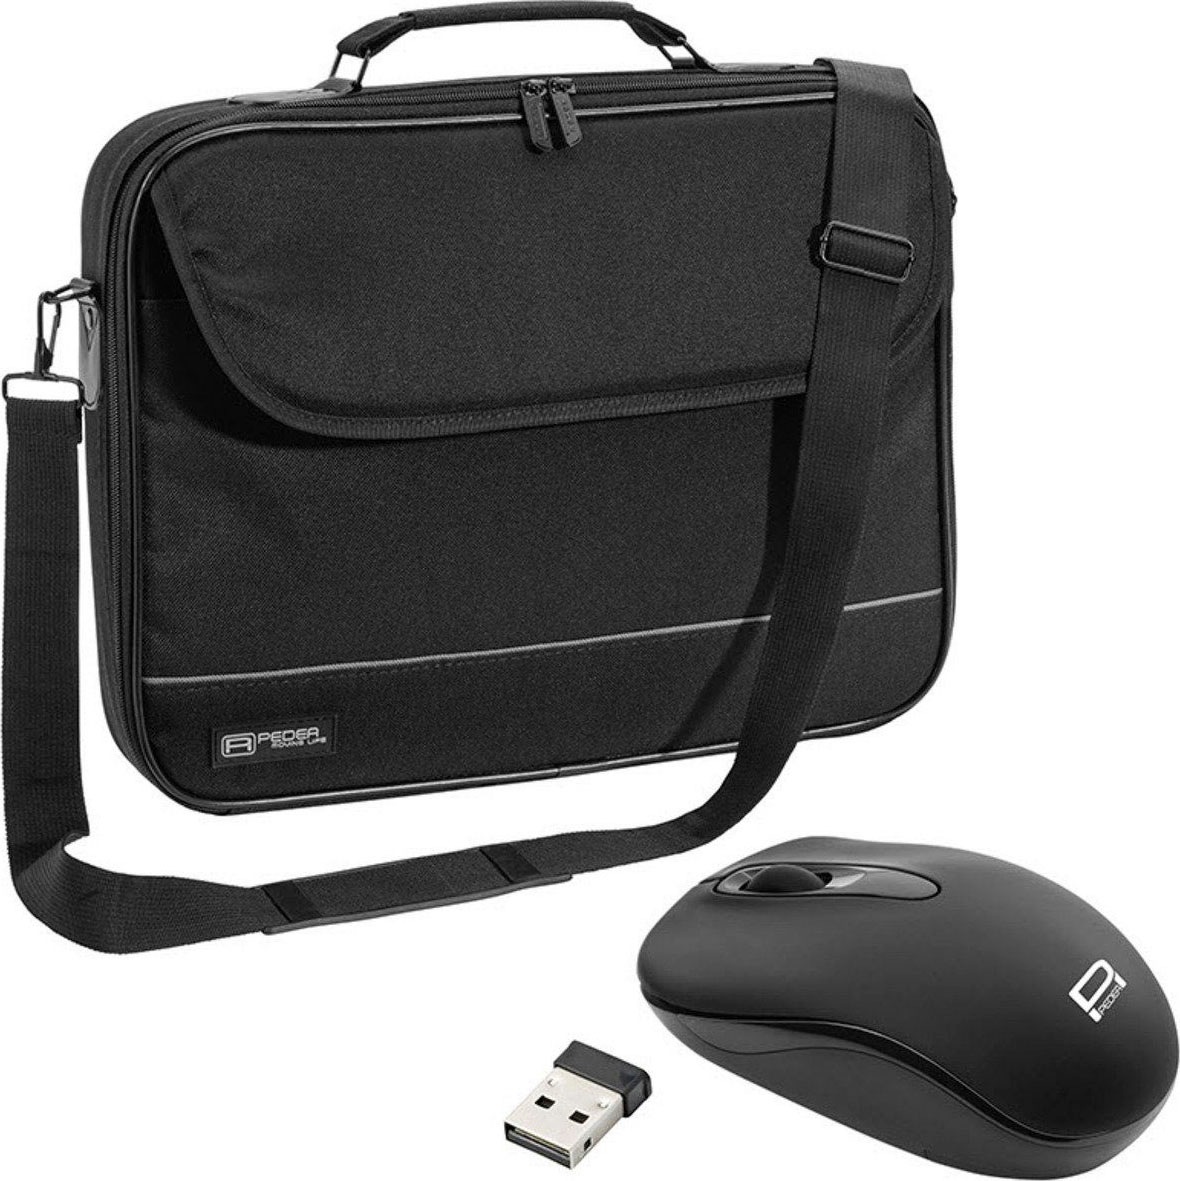 Laptoptasche »Notebooktasche "Fair" 14,1 Zoll (35,8cm) + PC Maus«